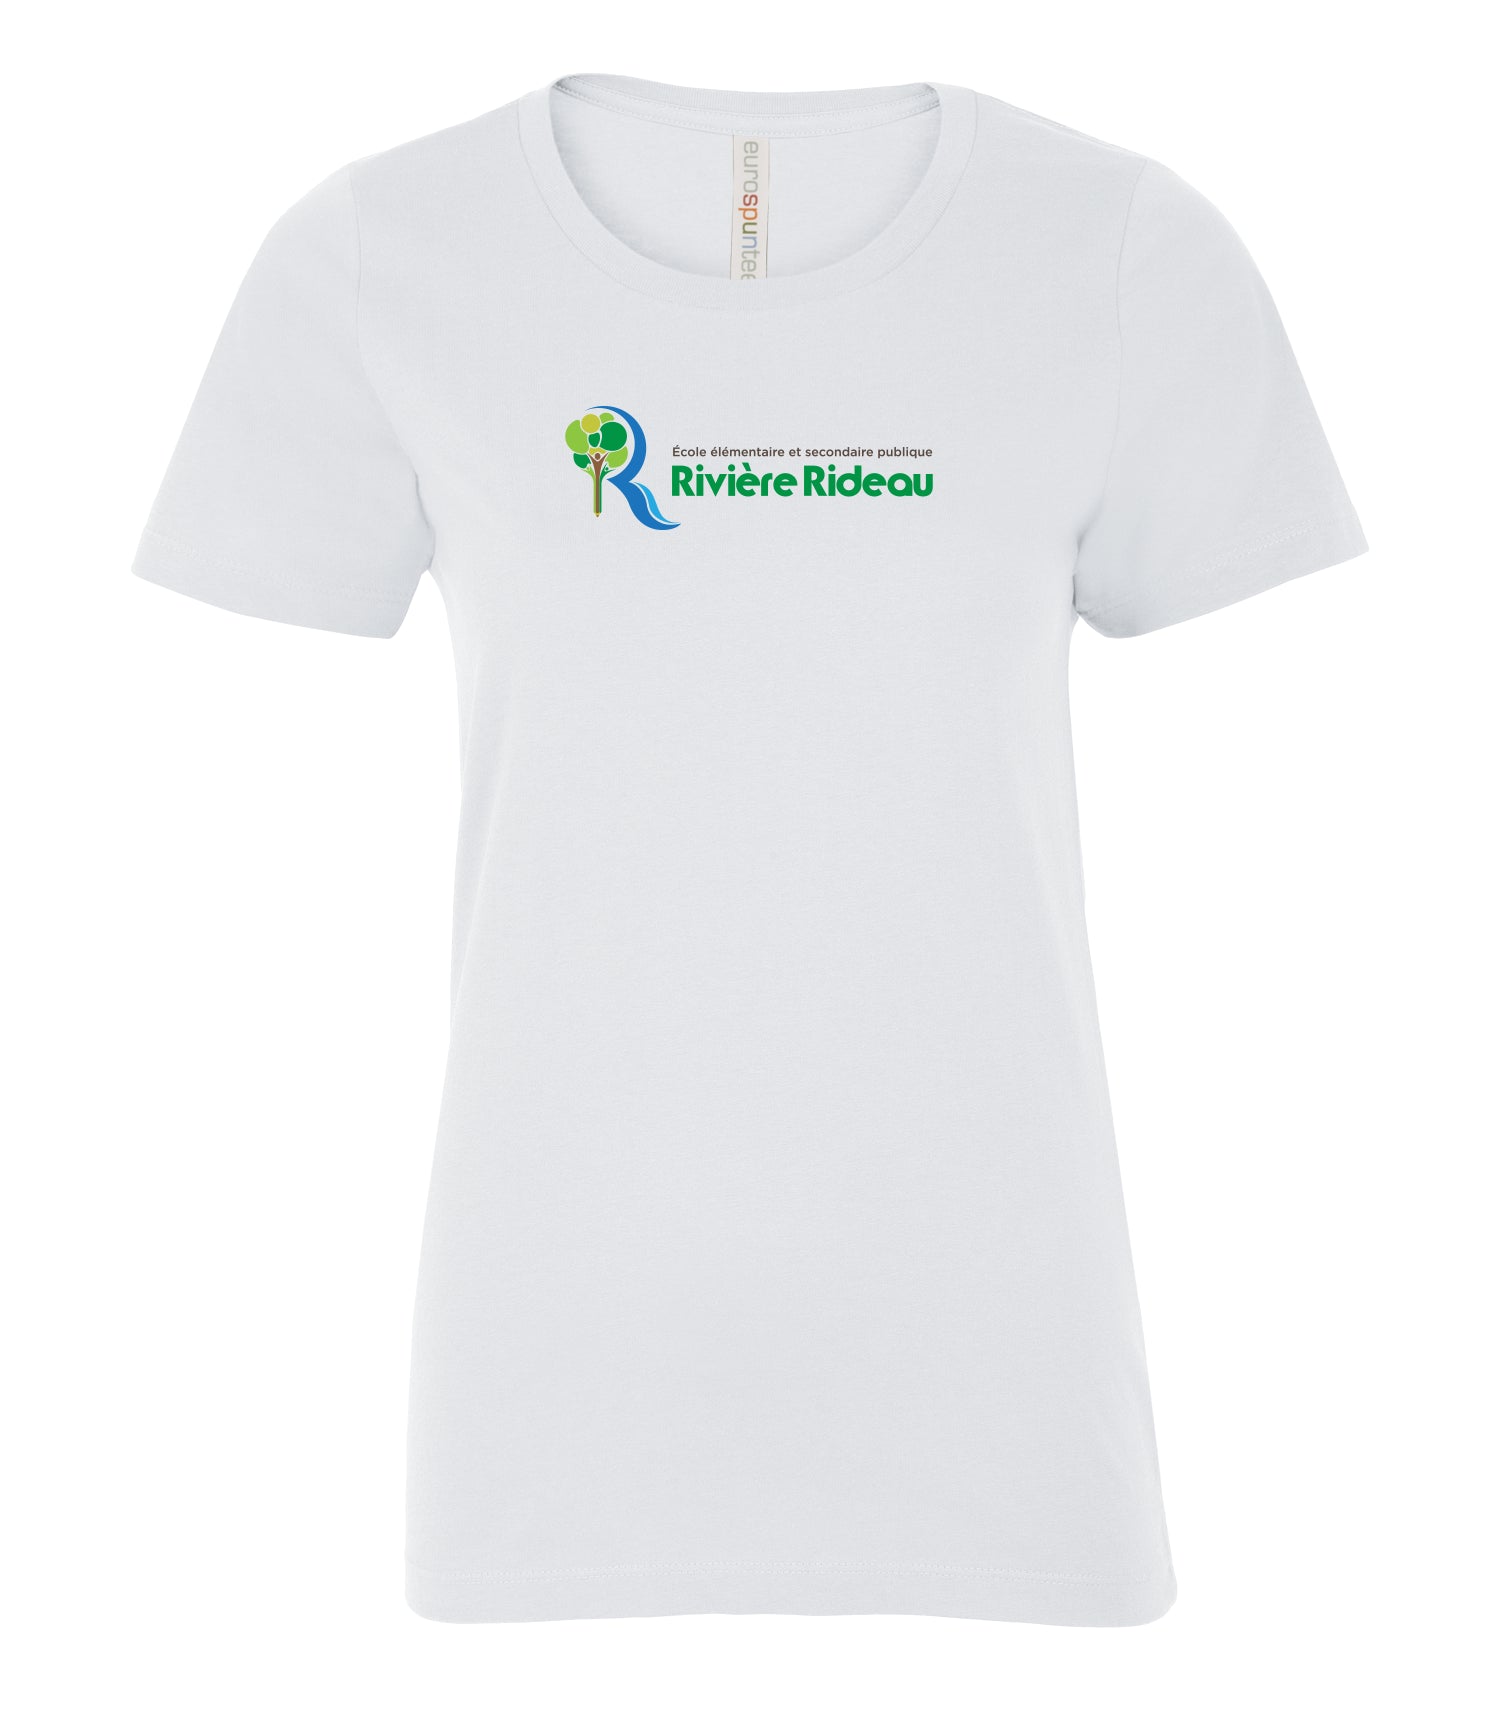 T-shirt ATC EUROSPUN Ring Spun pour femmes